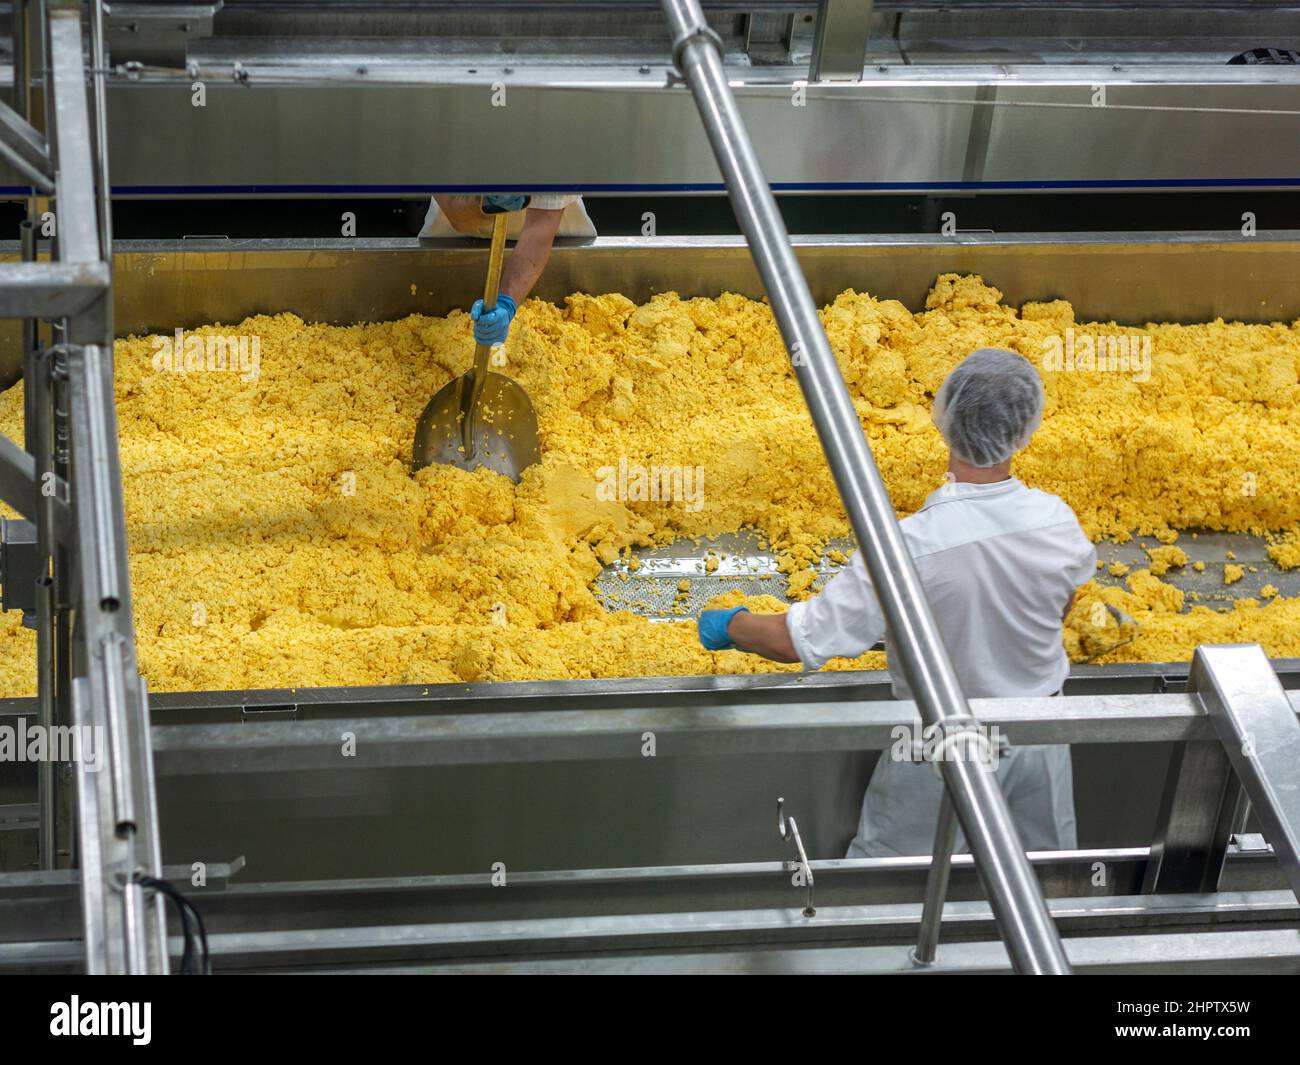 Beim Käsekoop St. Albert gelbe Käsebrüge schaufeln: Zwei Arbeiter schaben mit großen Edelstahlschaufeln Käsebrüche an die Seite eines Trogs, um das Entleeren zu erleichtern. Stockfoto